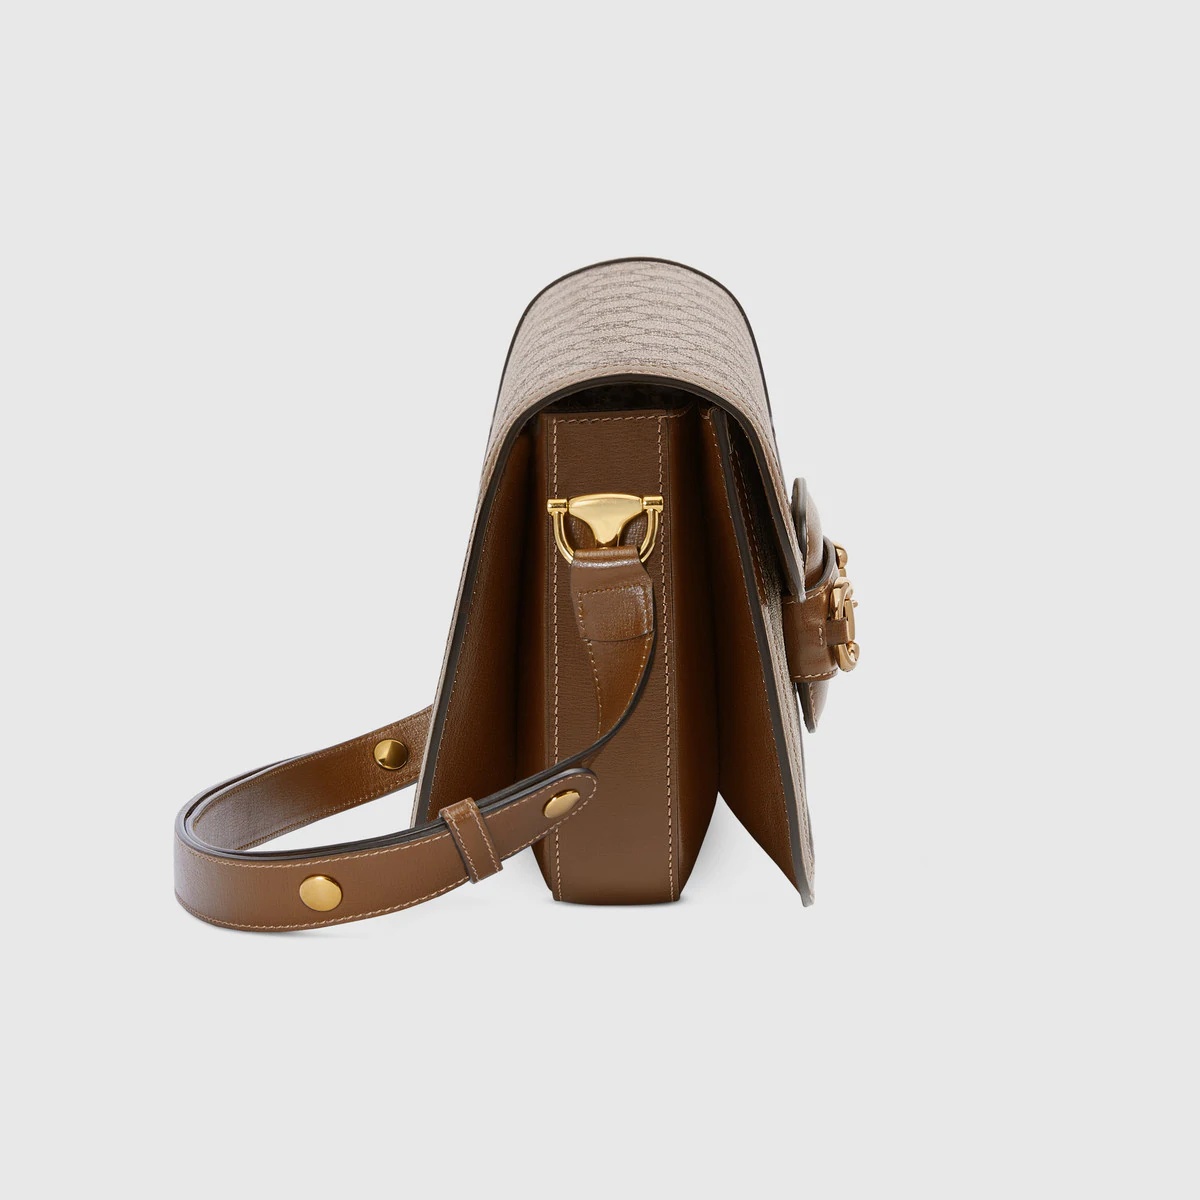 Gucci Horsebit 1955 shoulder bag - 3